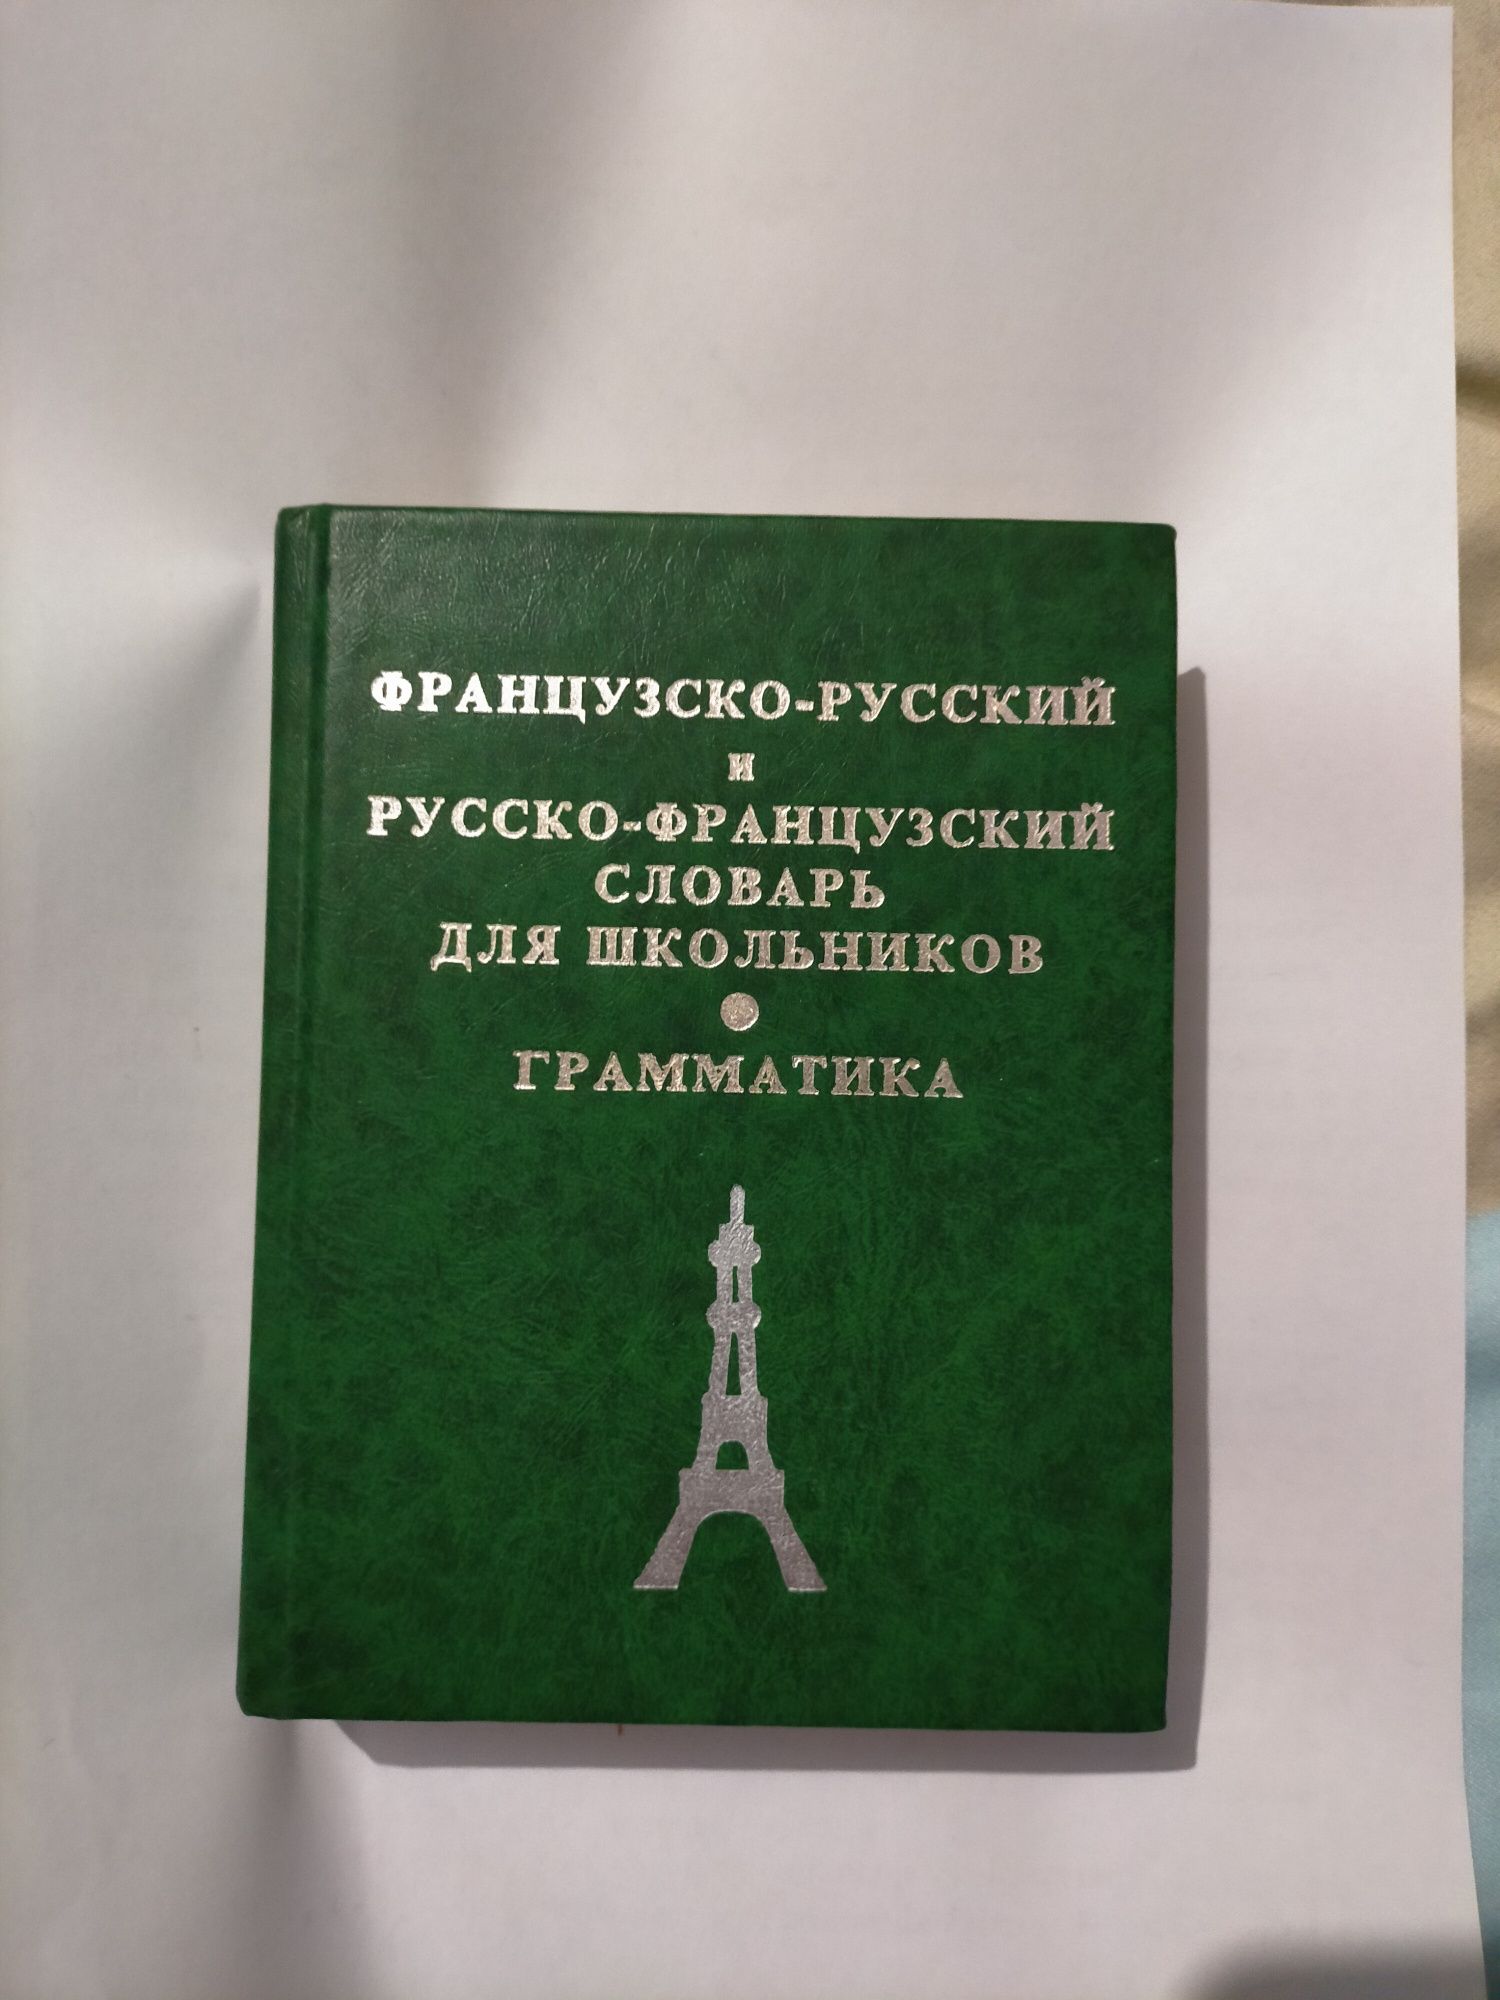 Продаю французско-русский и русско-французский словарь.